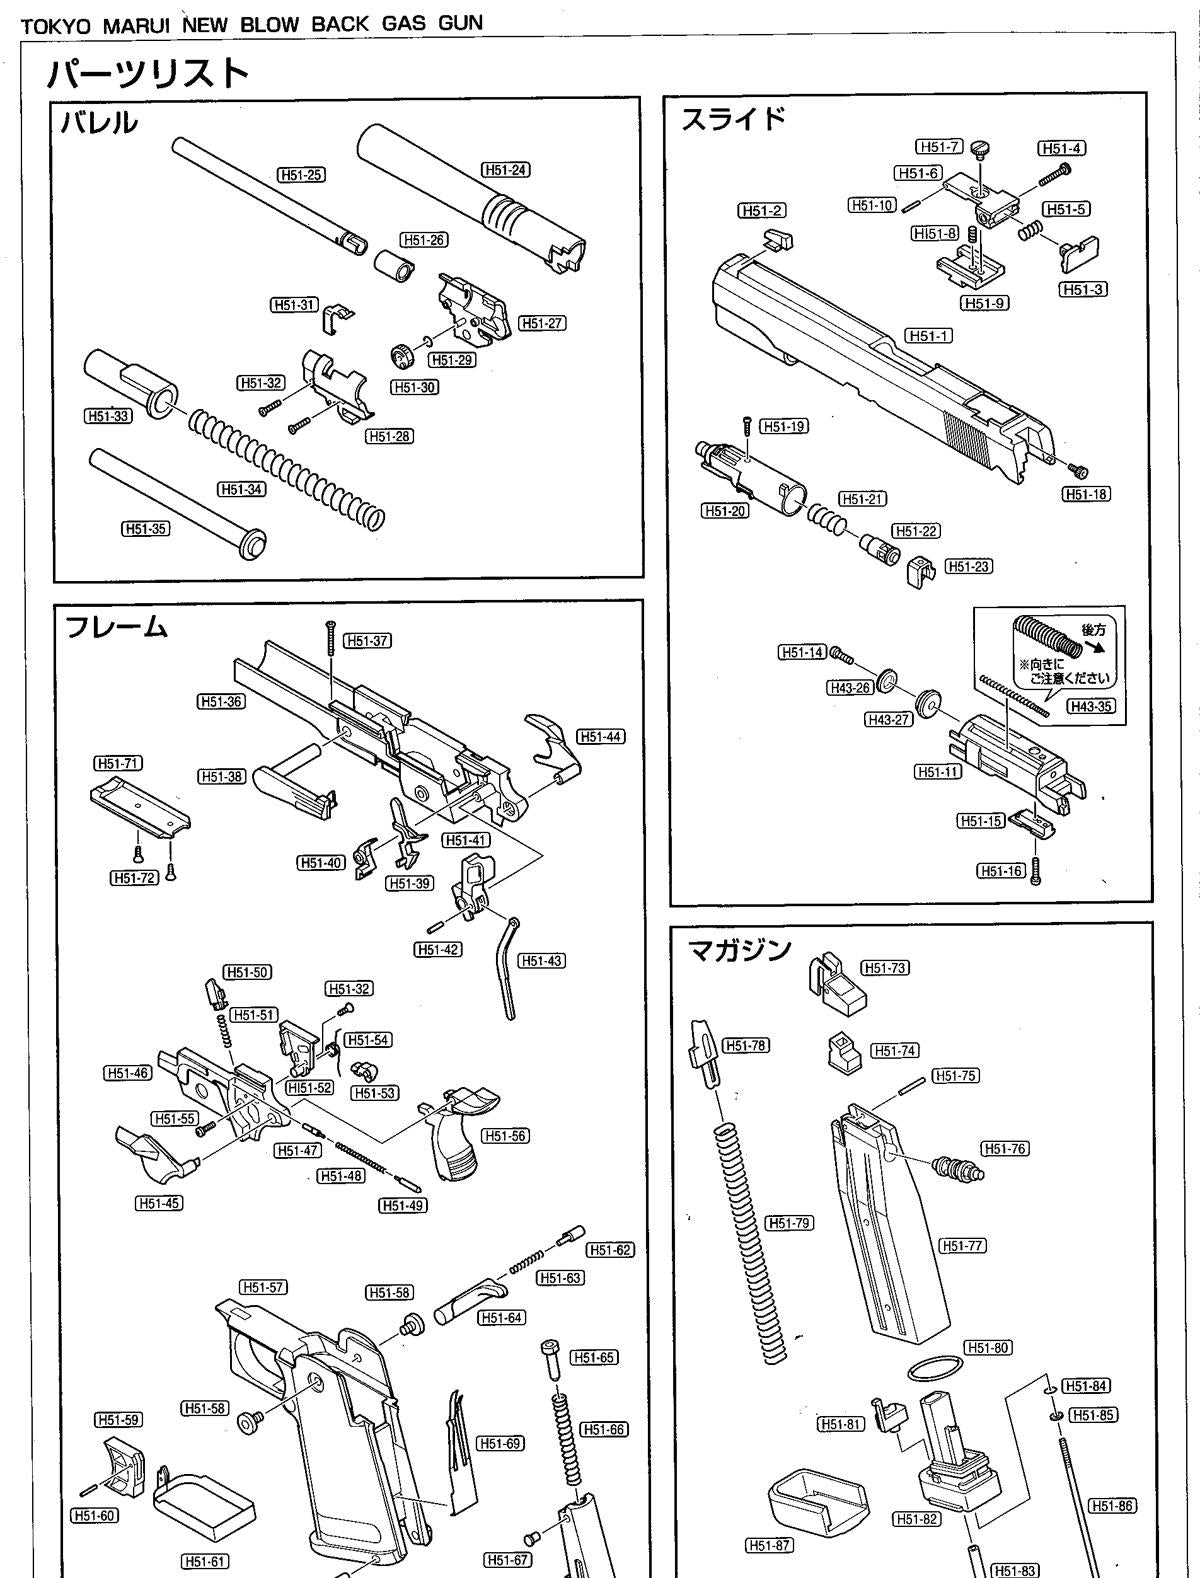 Tokyo Marui Hi-Capa - Part H51-15 - Blow Back Unit Piston Part - Ebog Designs